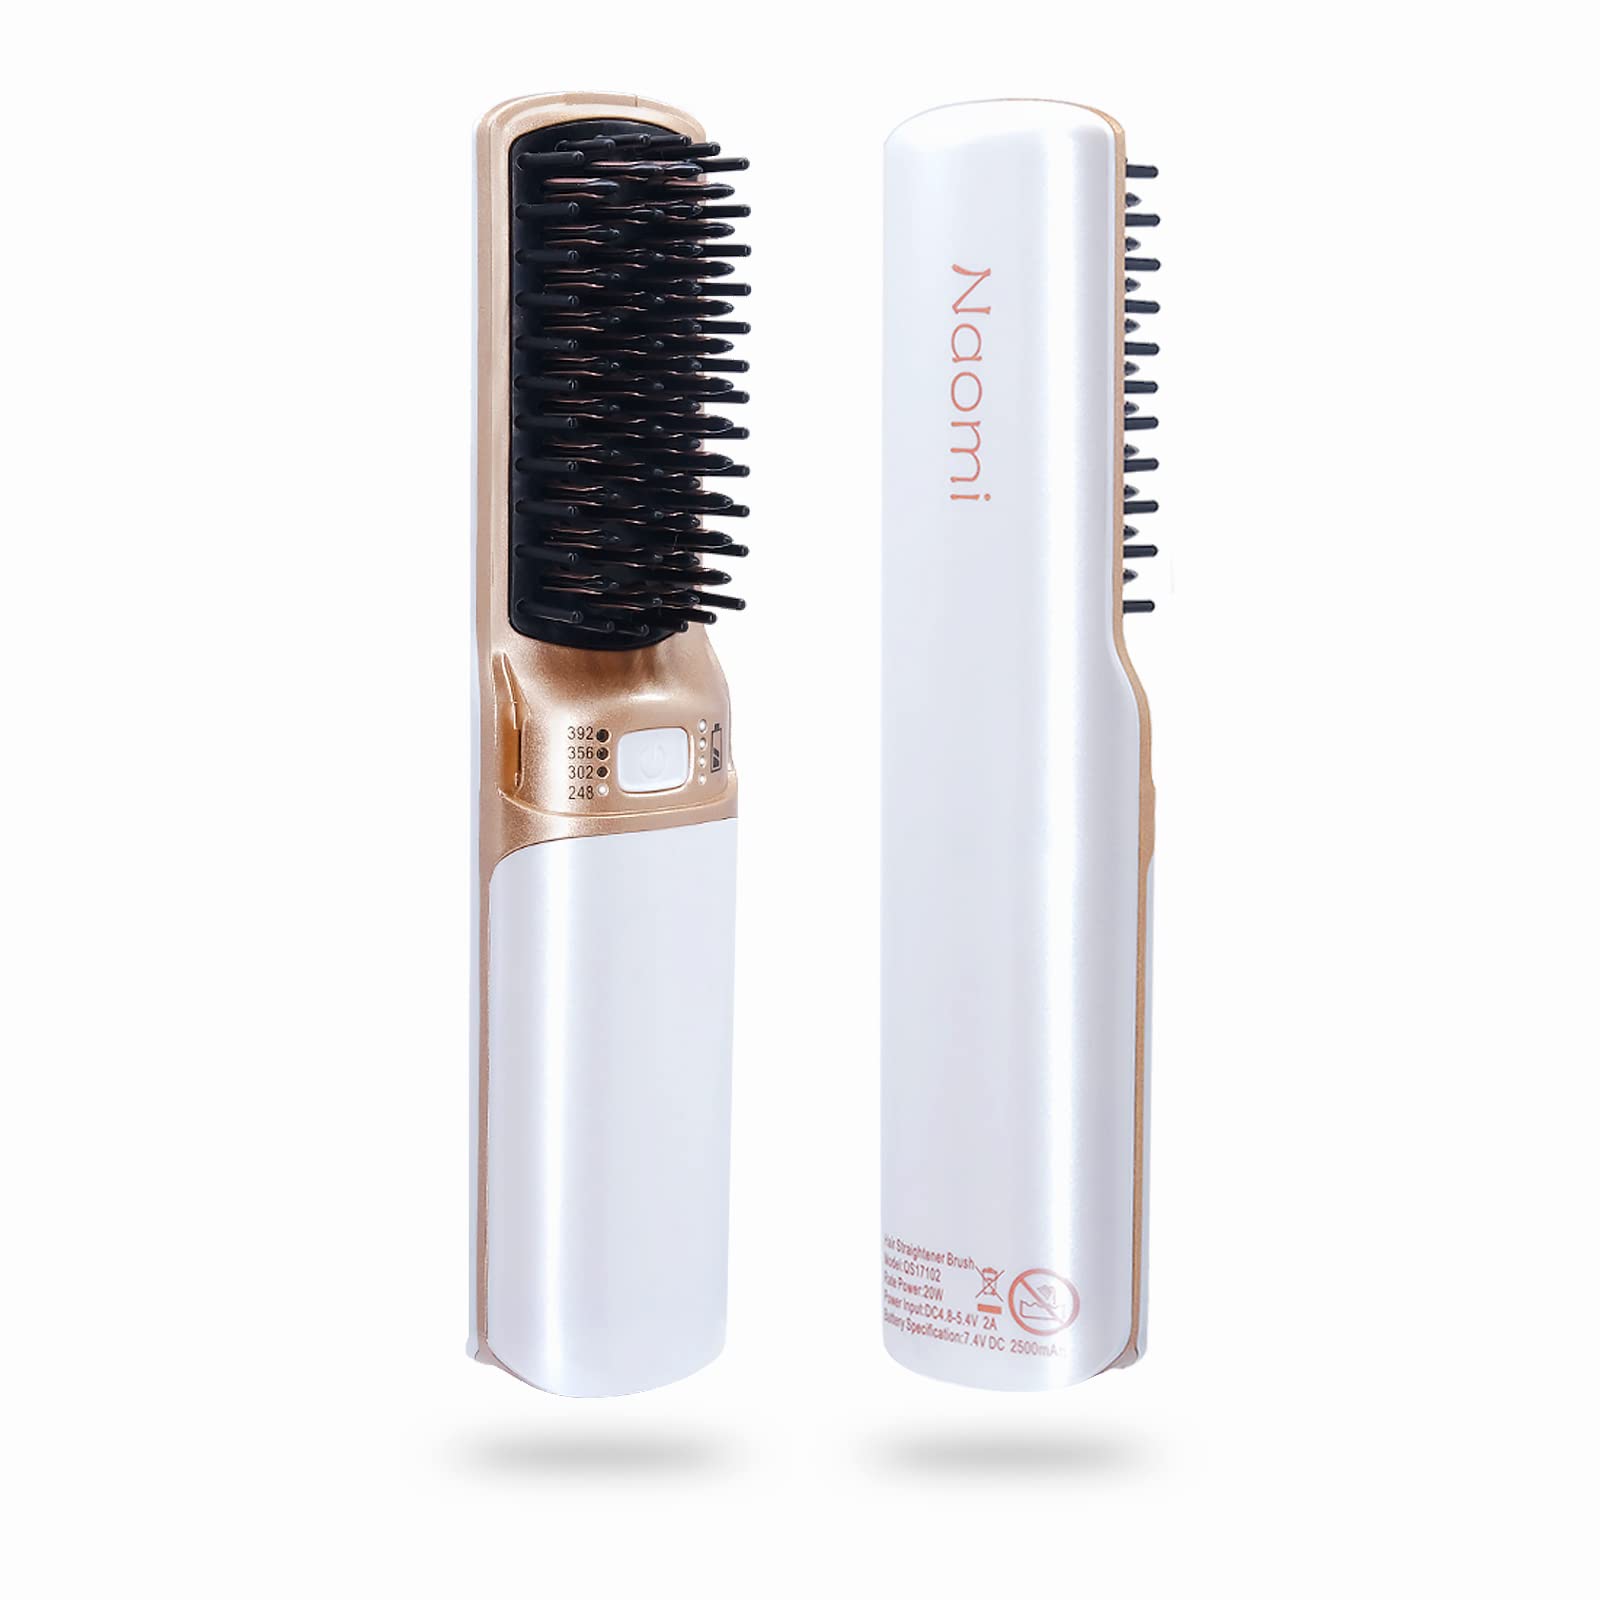 Hot Hair Straightener Brush,Portable Mini Hair Straightener USB  Rechargeable 5200MAH,2 in 1 Hair Straightener